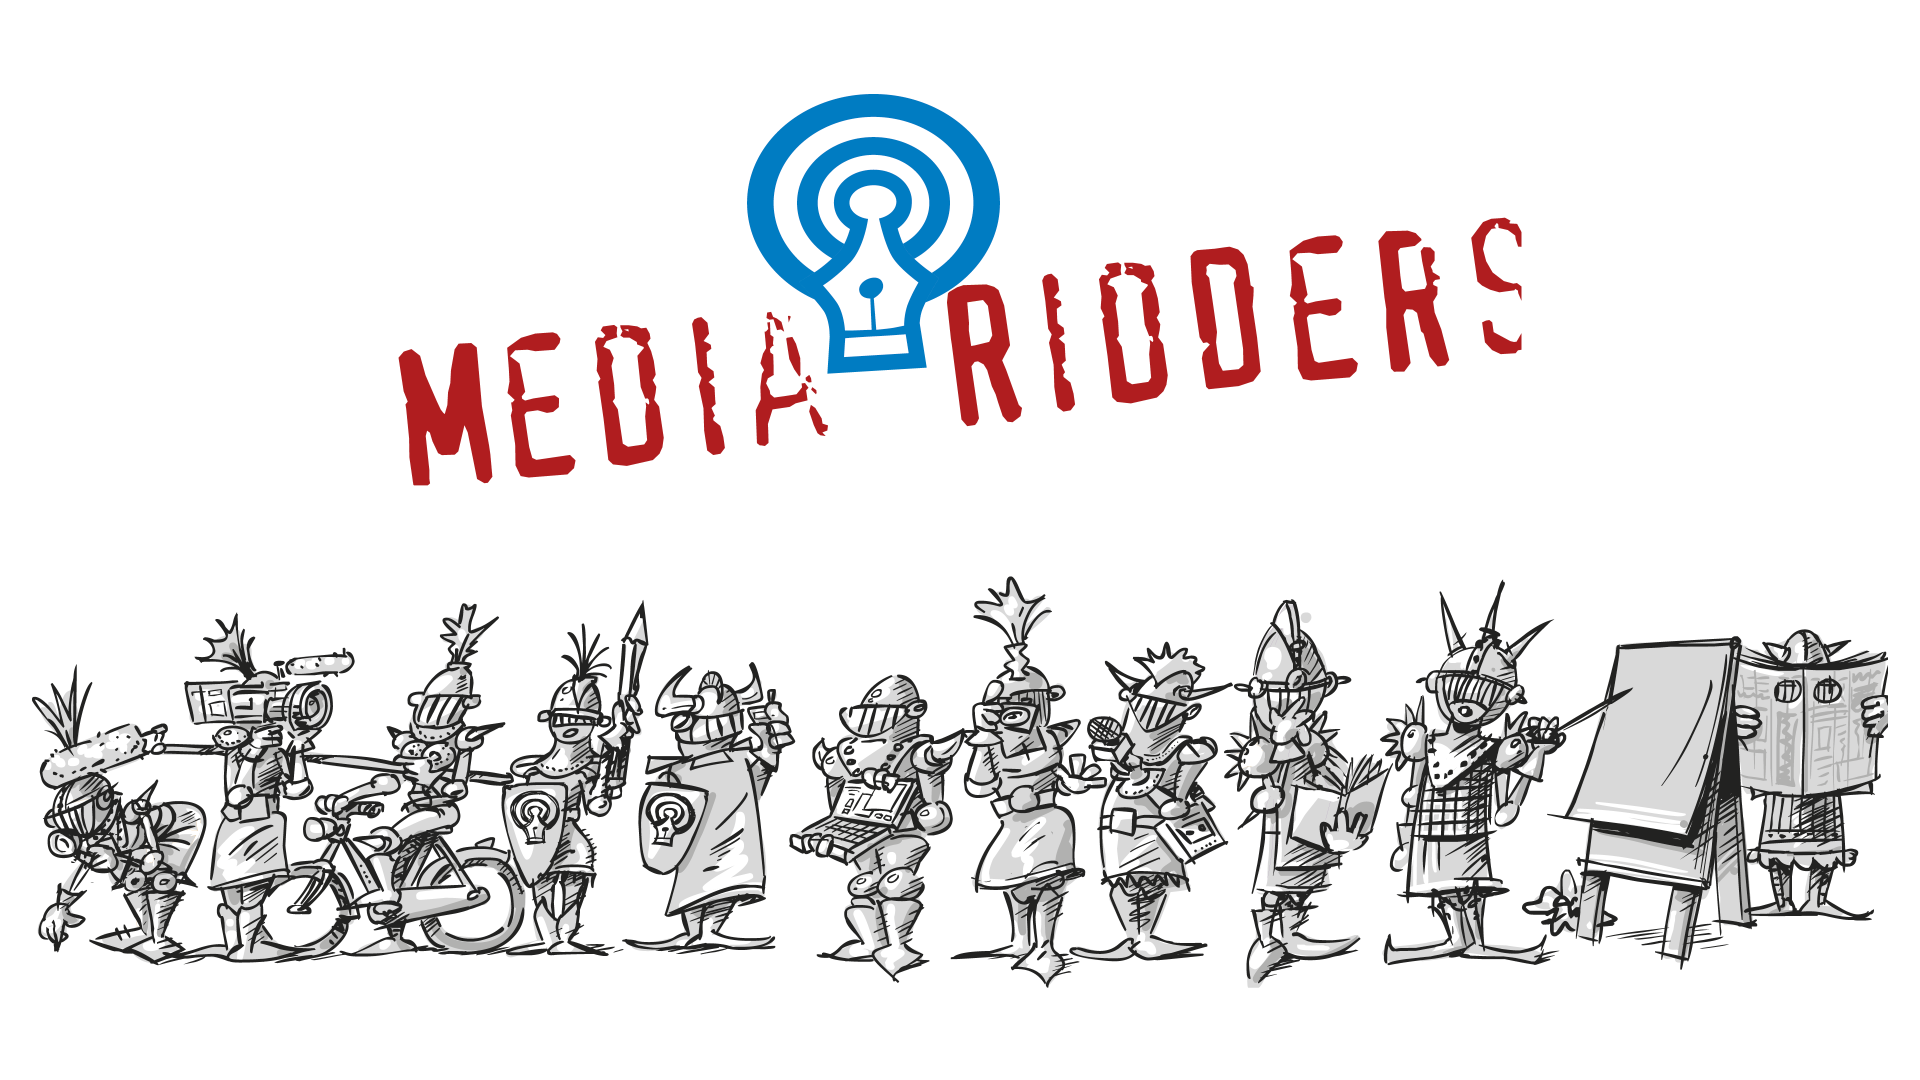 Mediaridders